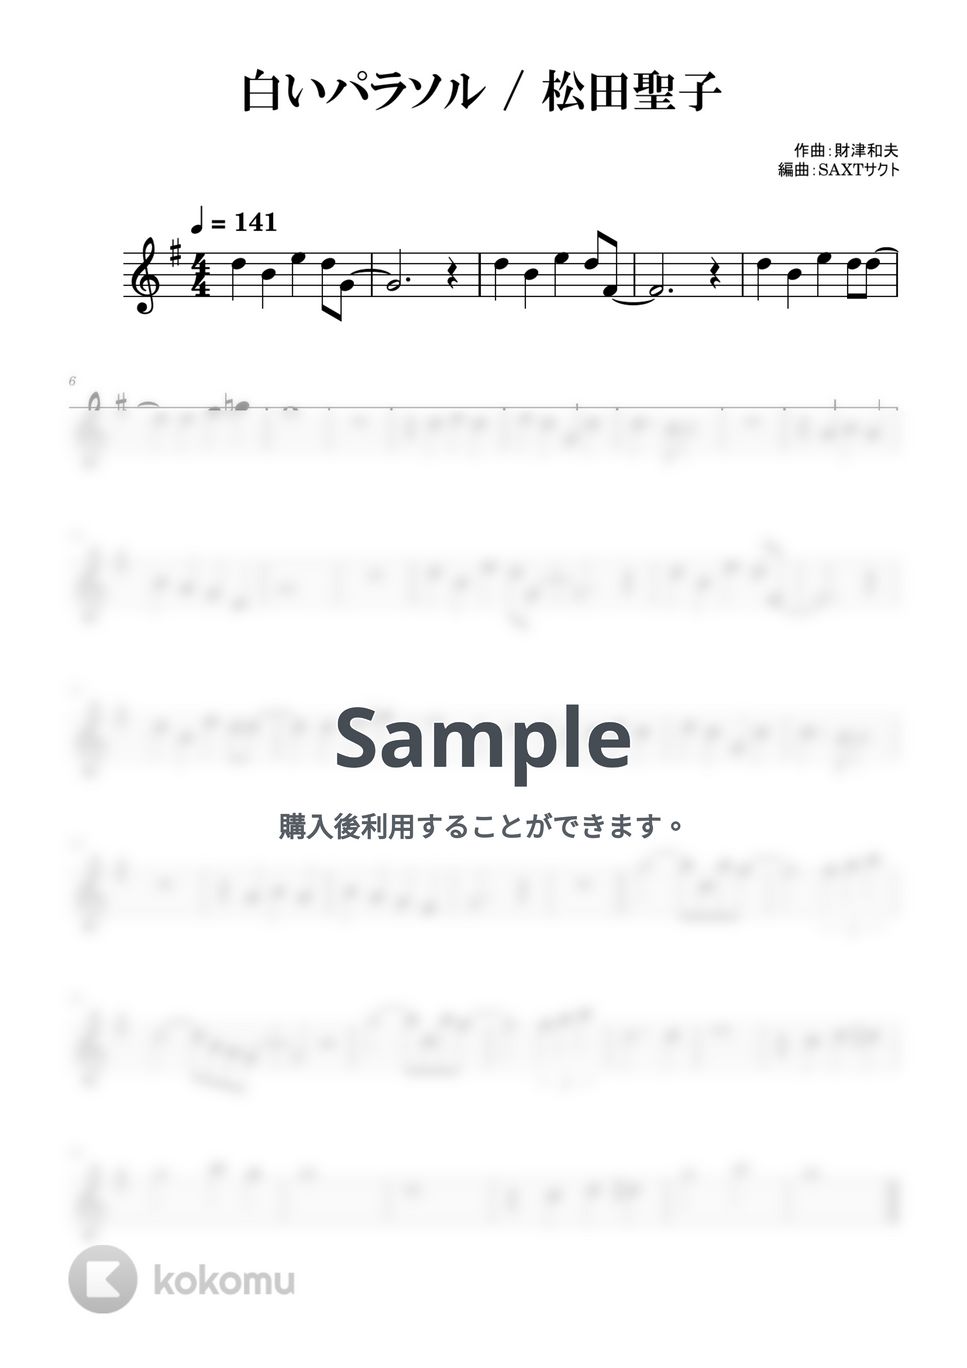 松田聖子 - 白いパラソル (めちゃラク譜) by SAXT